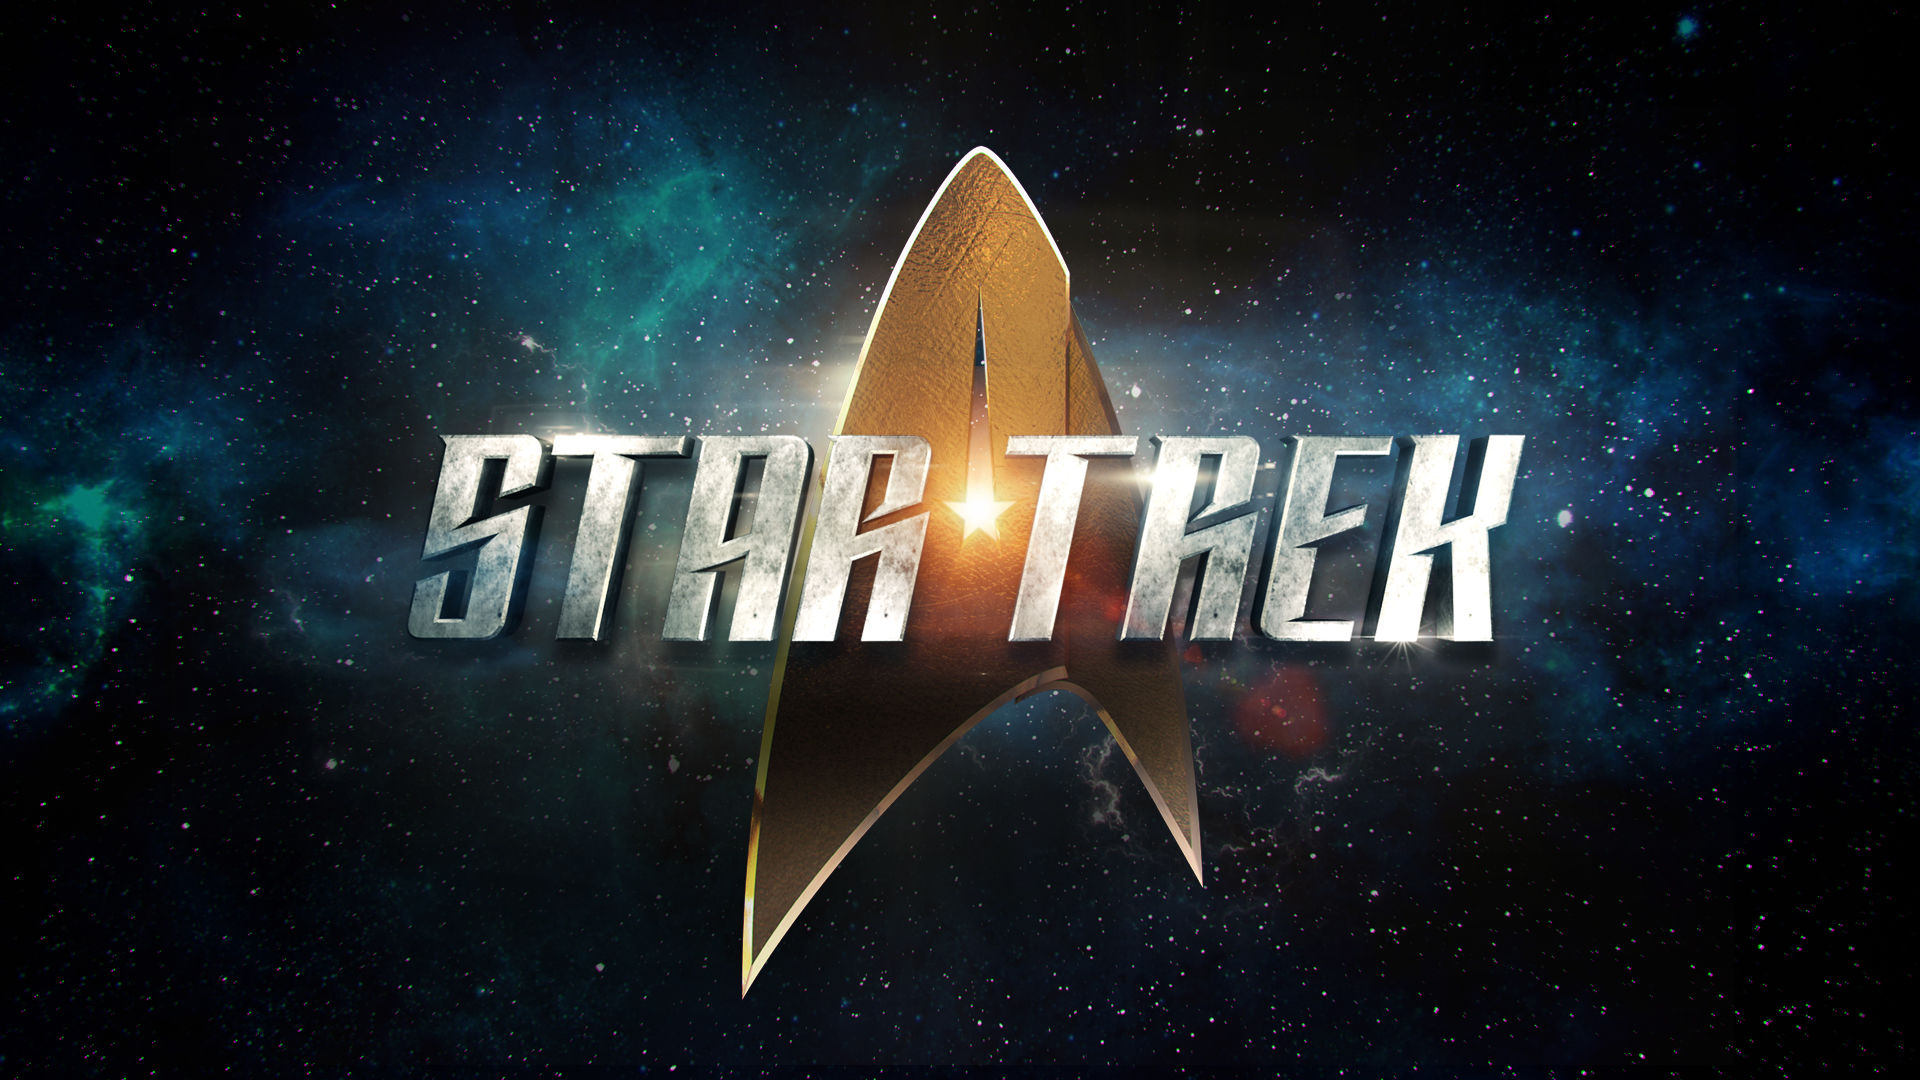 La nuova serie di Star Trek su Picard arriverà su Prime Video thumbnail